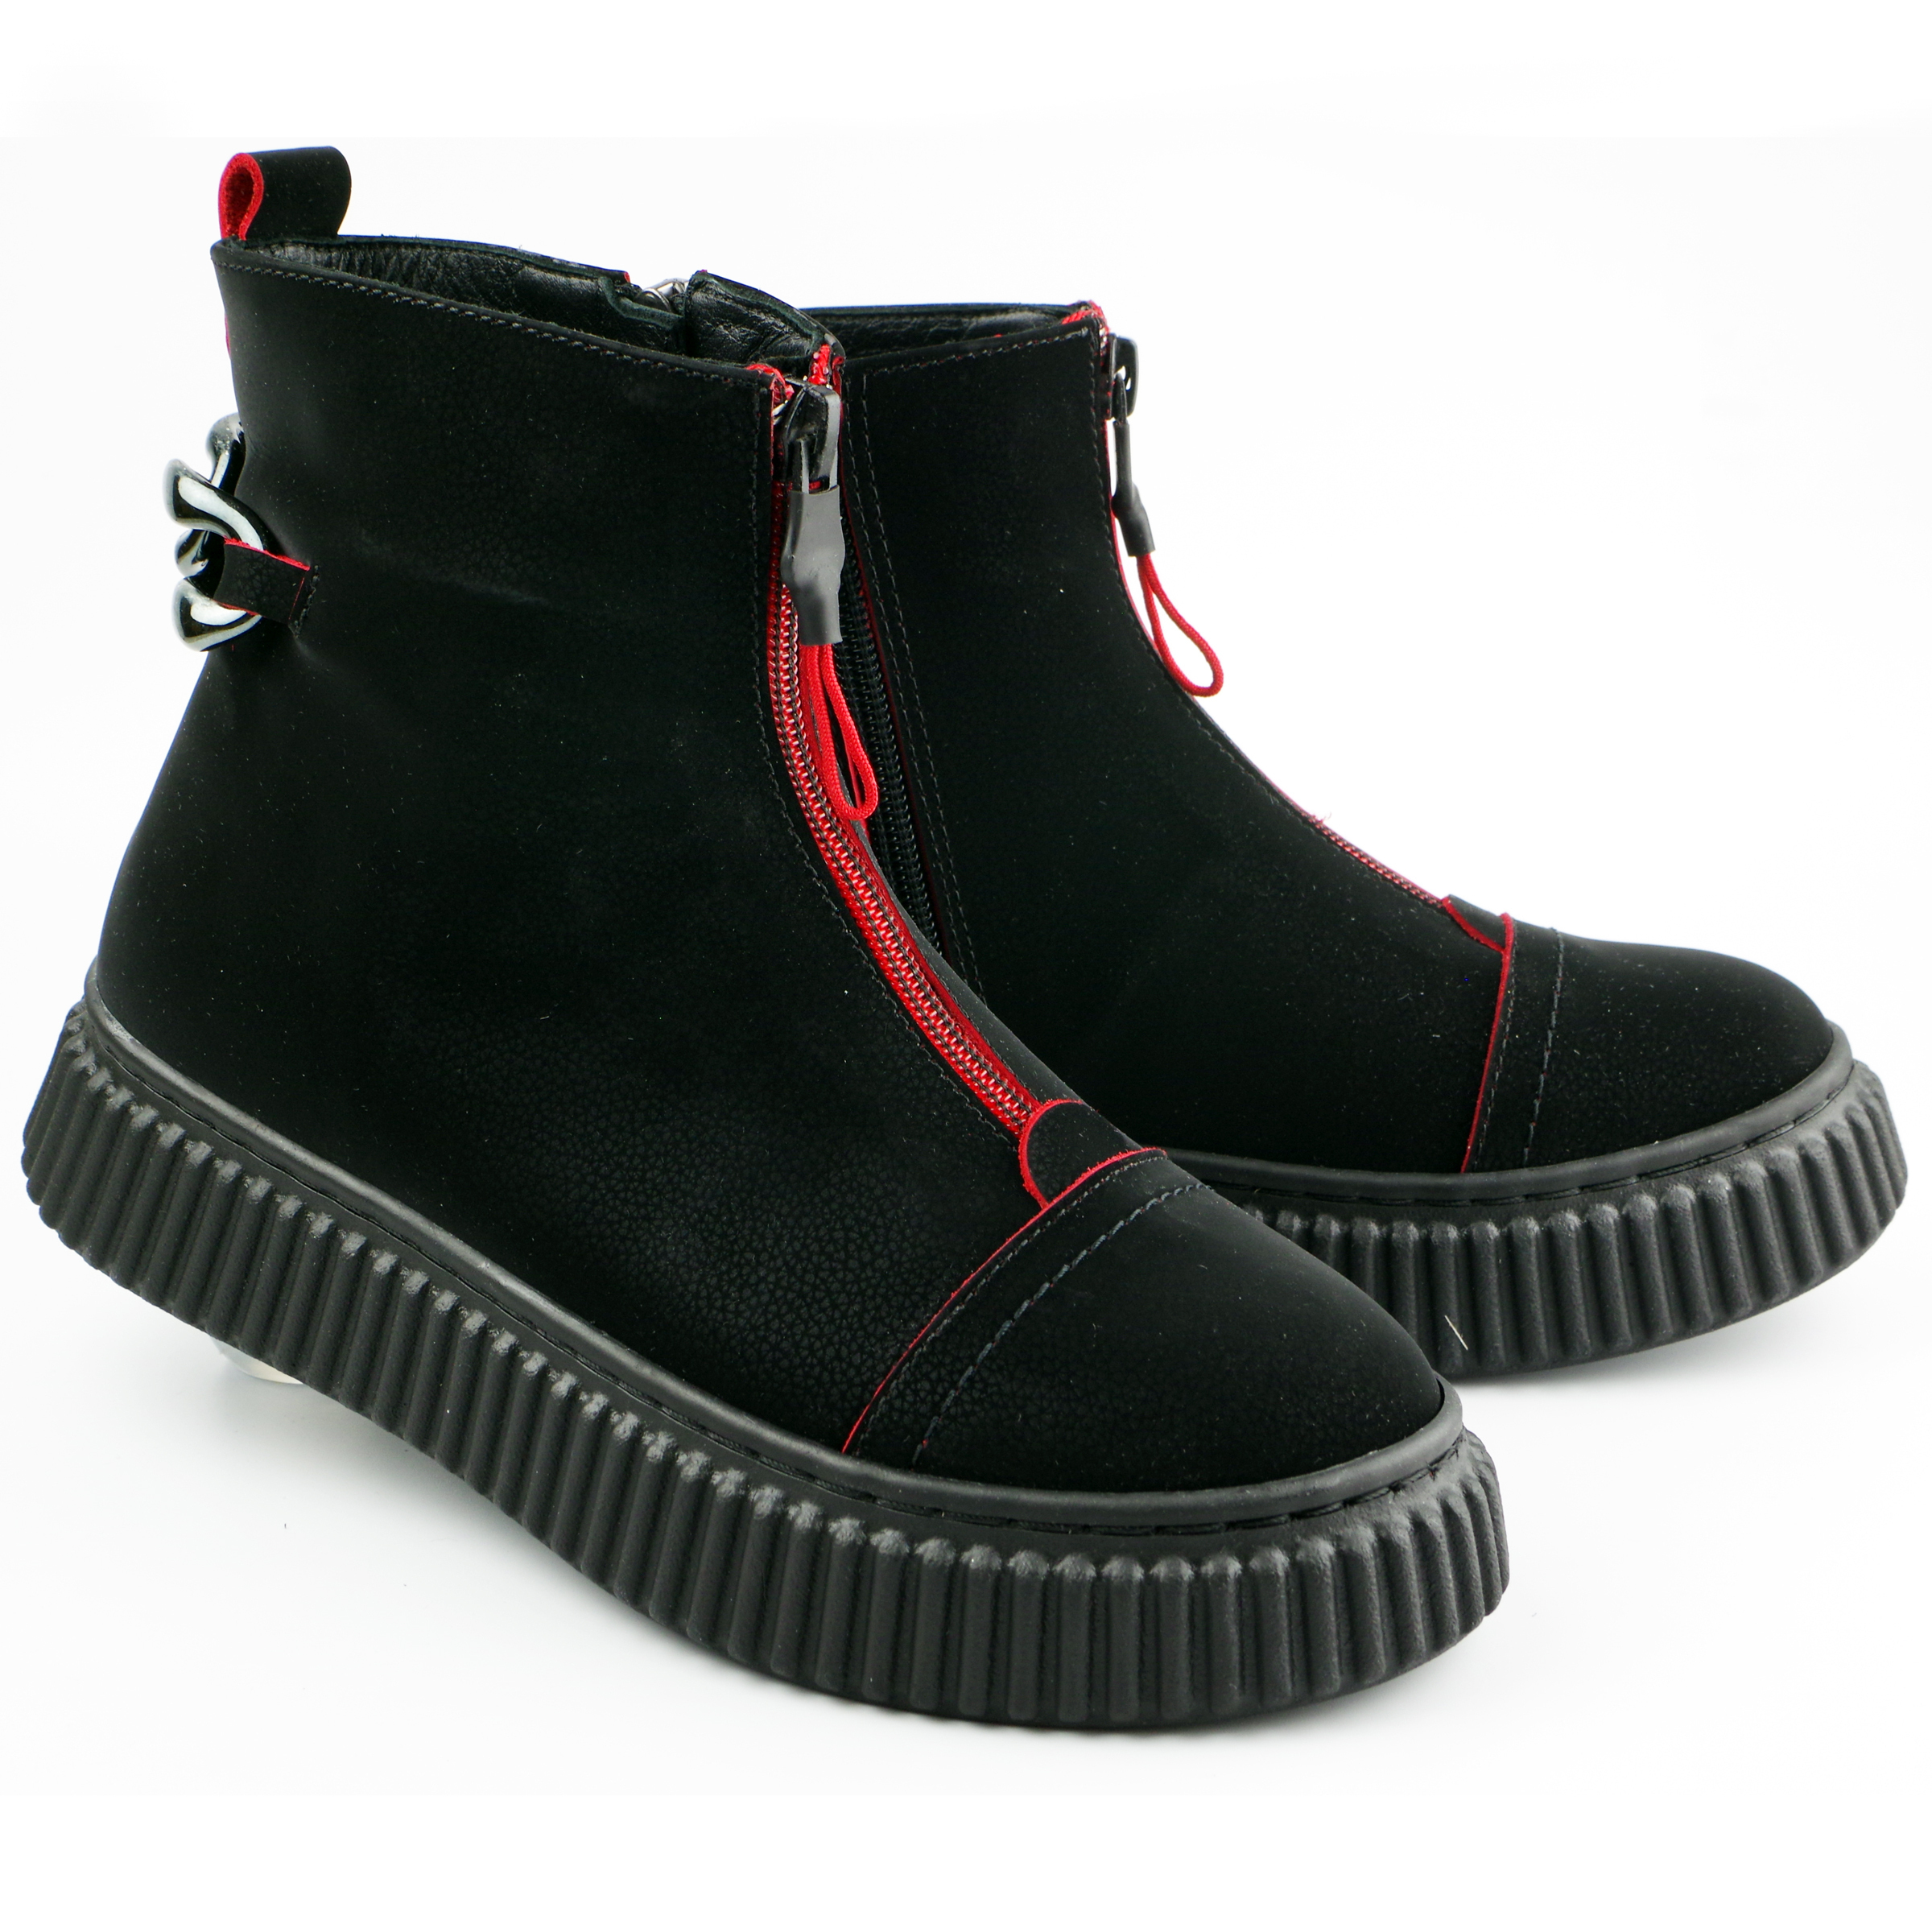 Демисезонные ботинки (2133) материал Нубук, цвет Черный  для девочки 31-36 размеры – Sole Kids. Фото 2